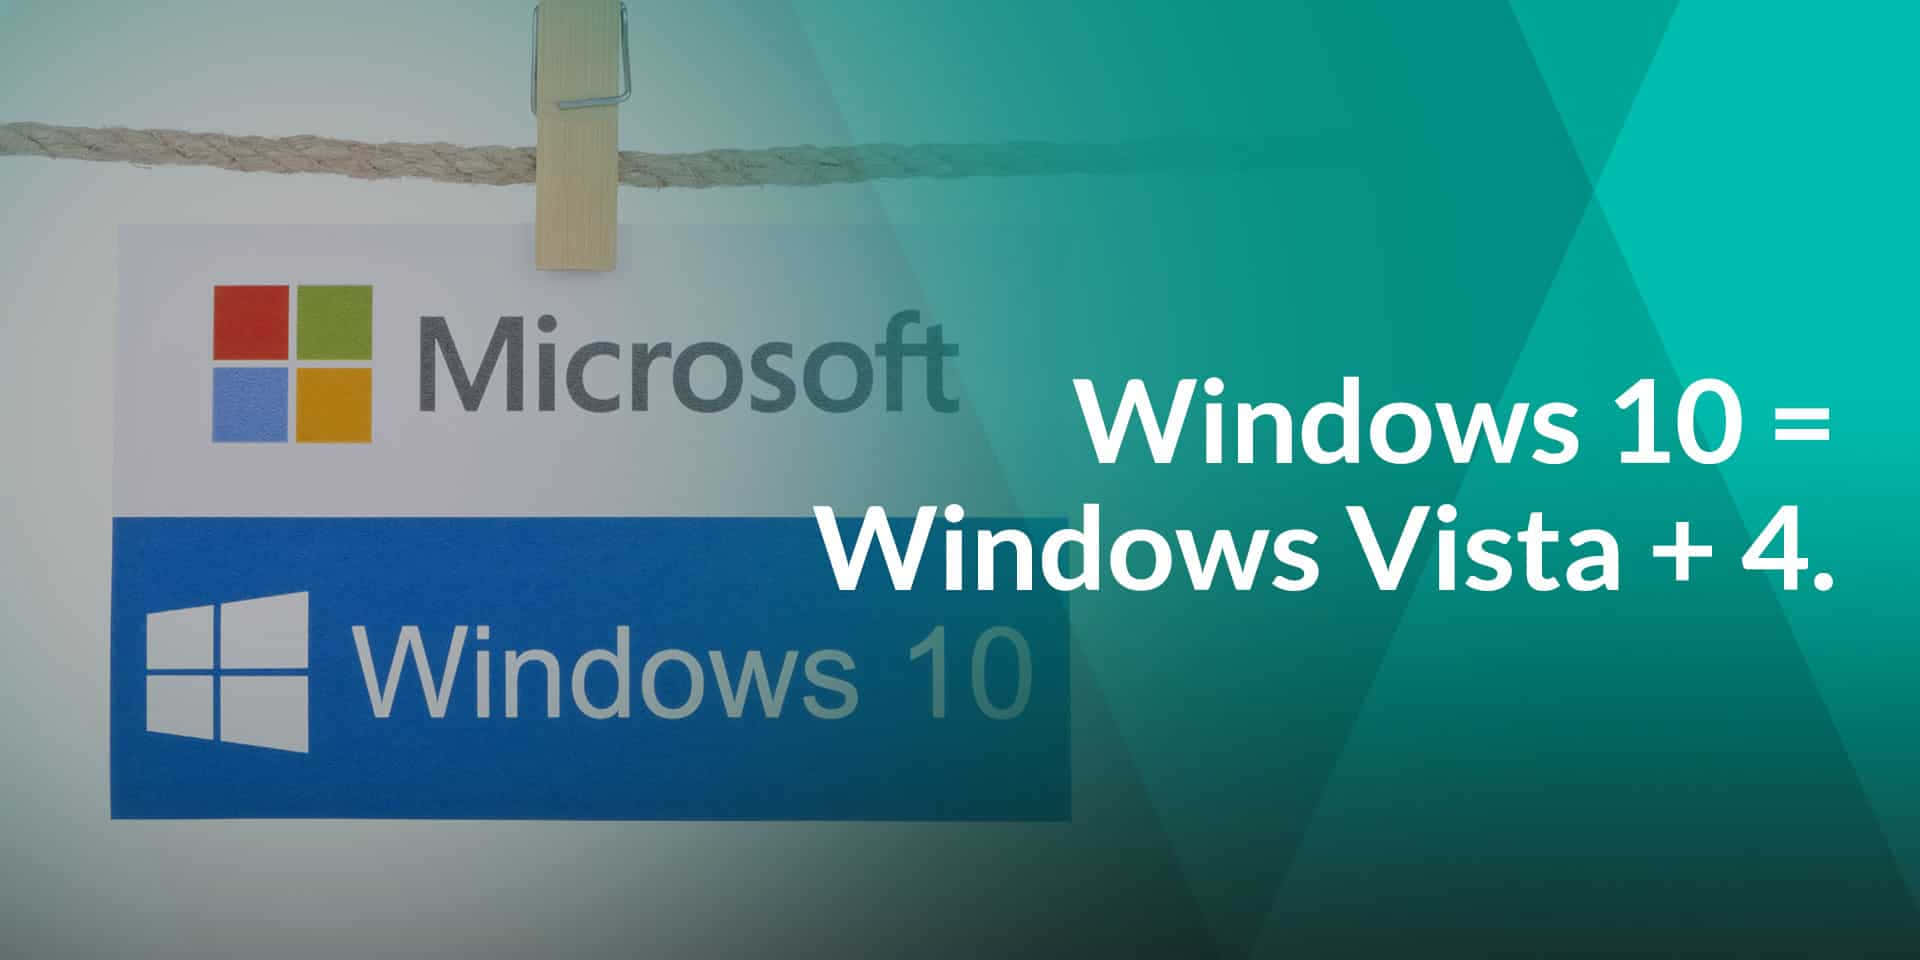 Windows Vista billeder af smukke scener